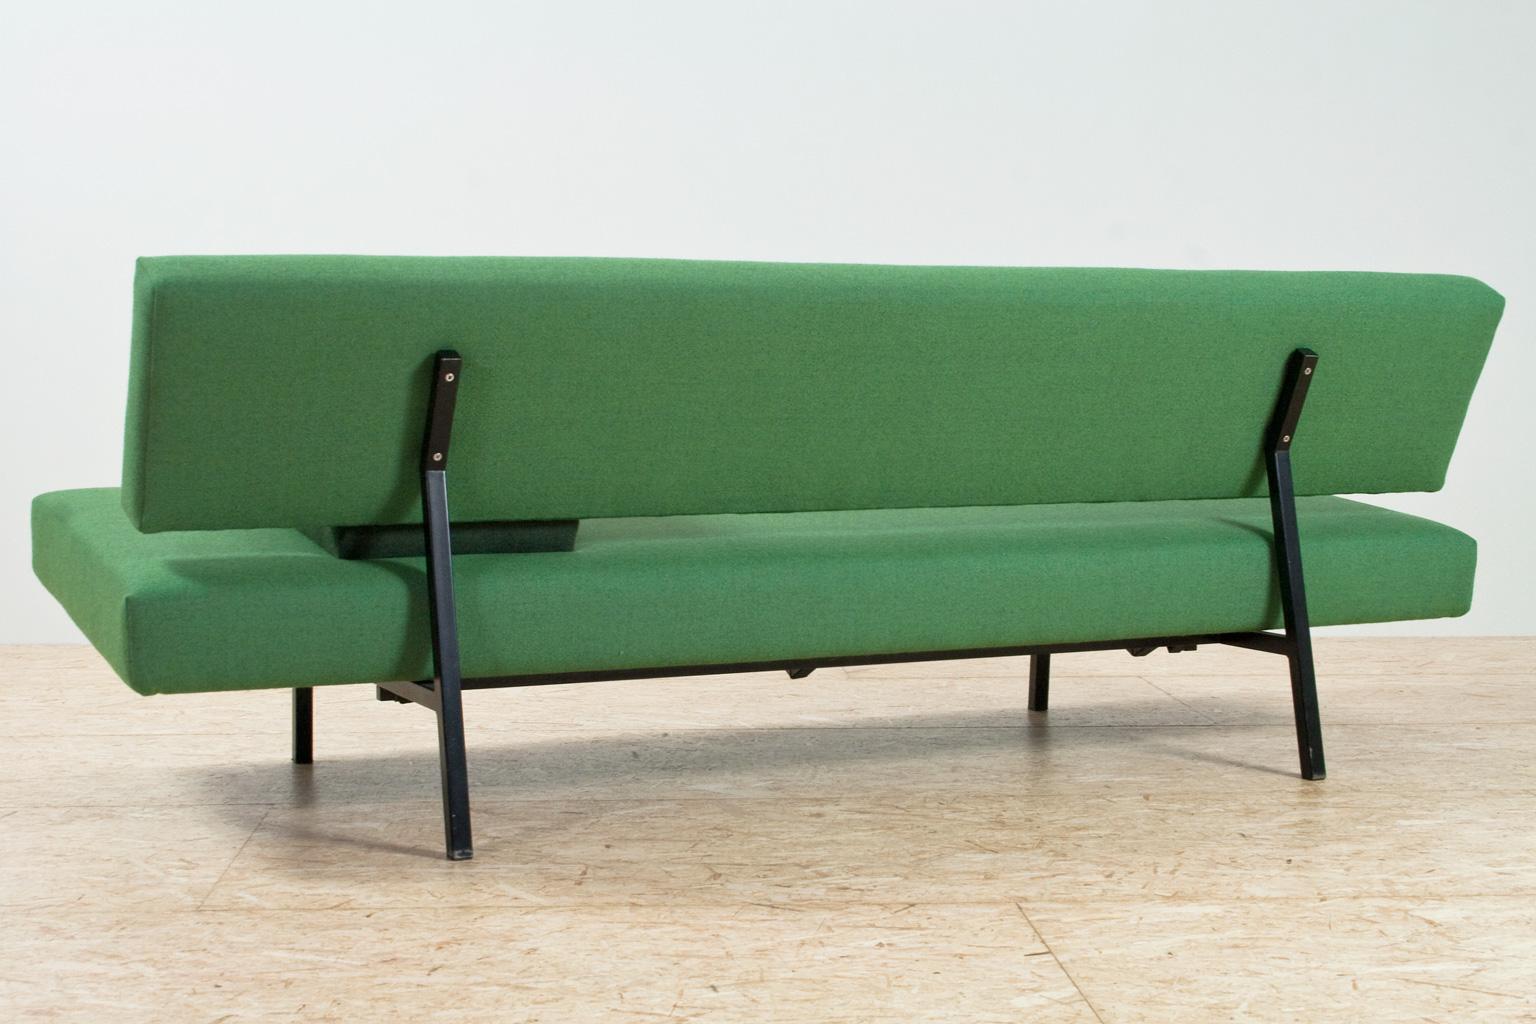 Dutch Mid-Century Modern Sofa Daybed in Forest Green by Martin Visser, Spectrum, 1960s